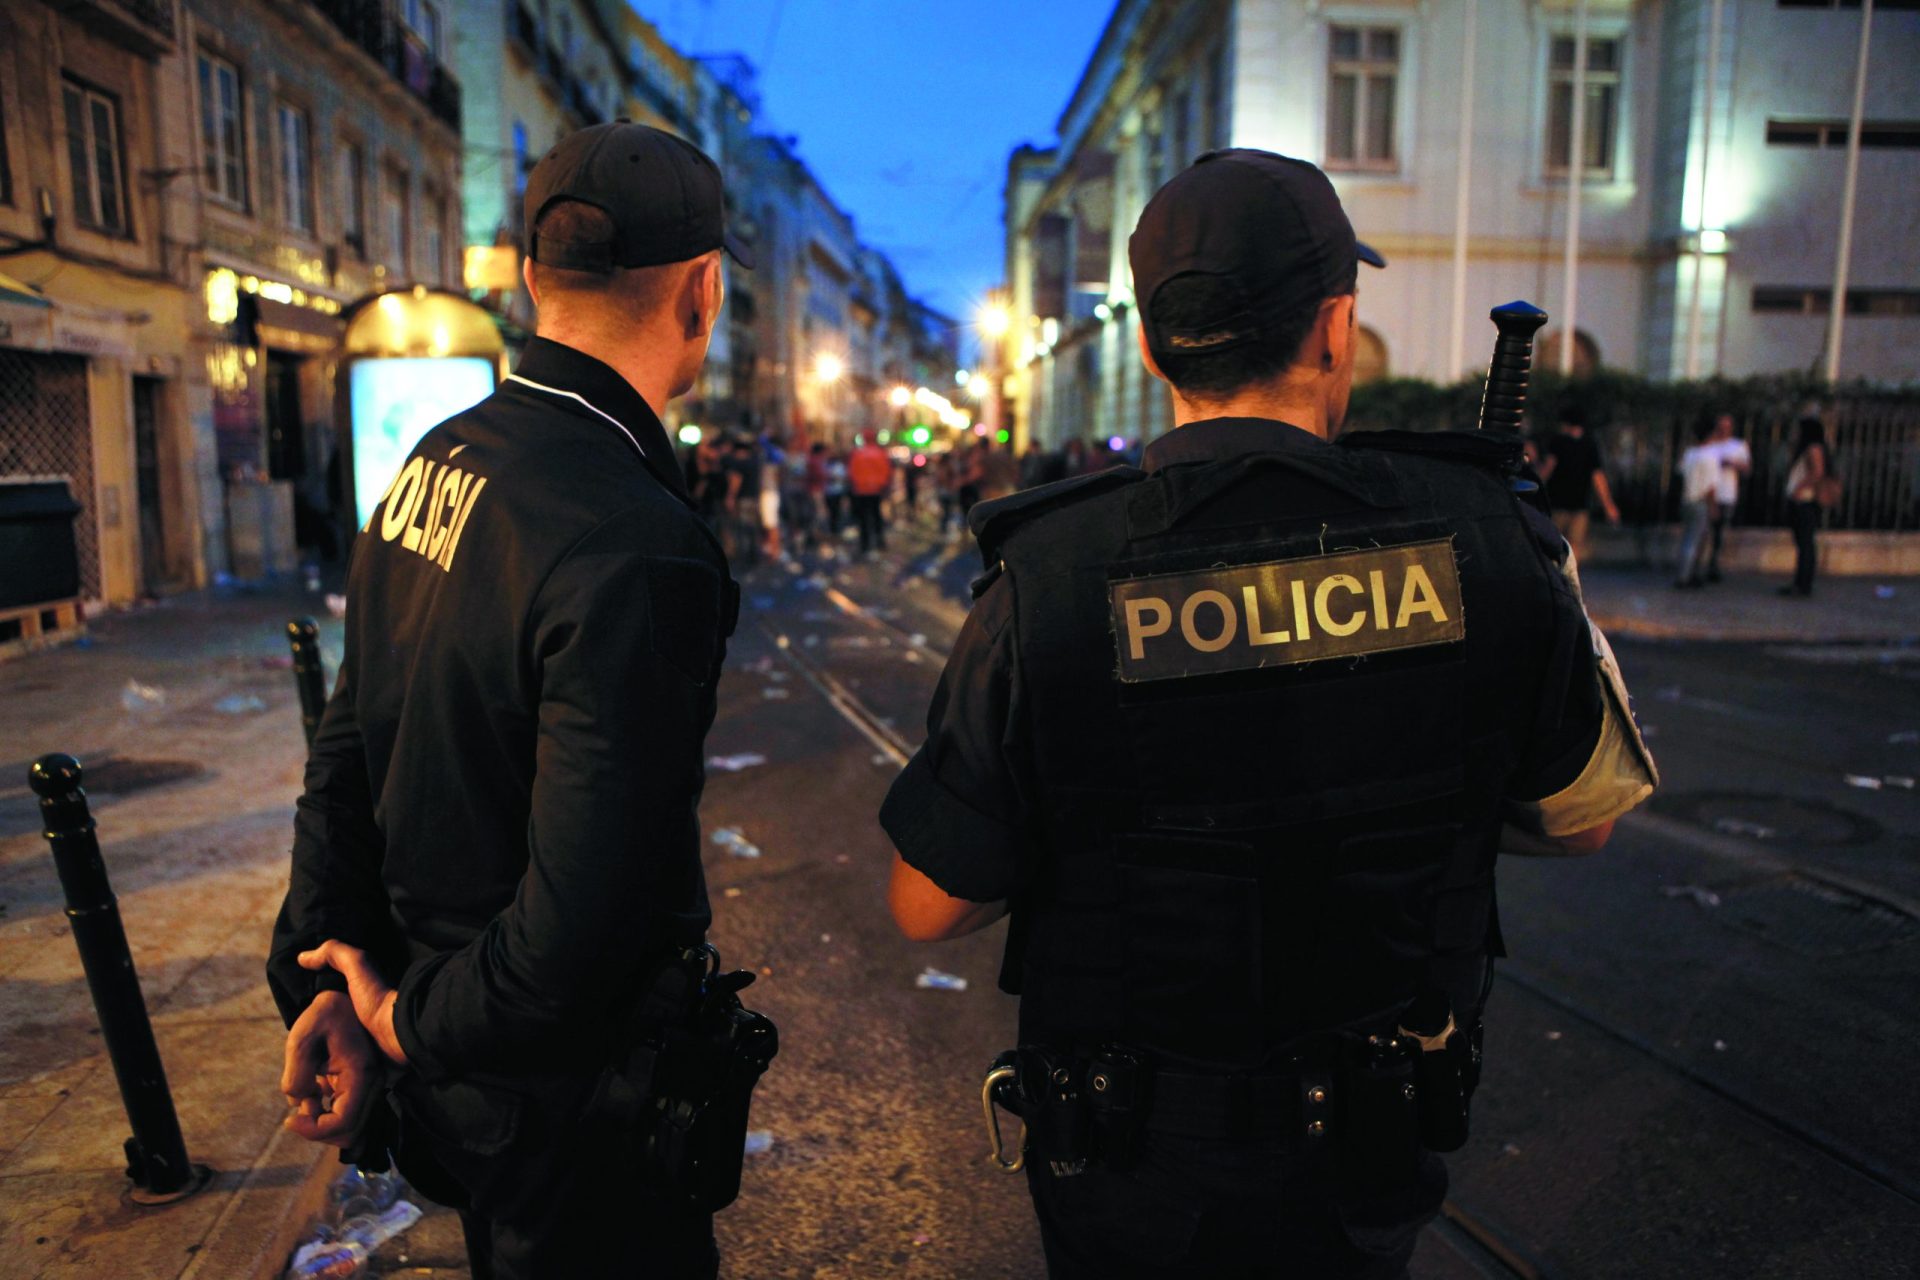 Santos Populares. Polícia na rua e &#8216;tolerância zero&#8217;